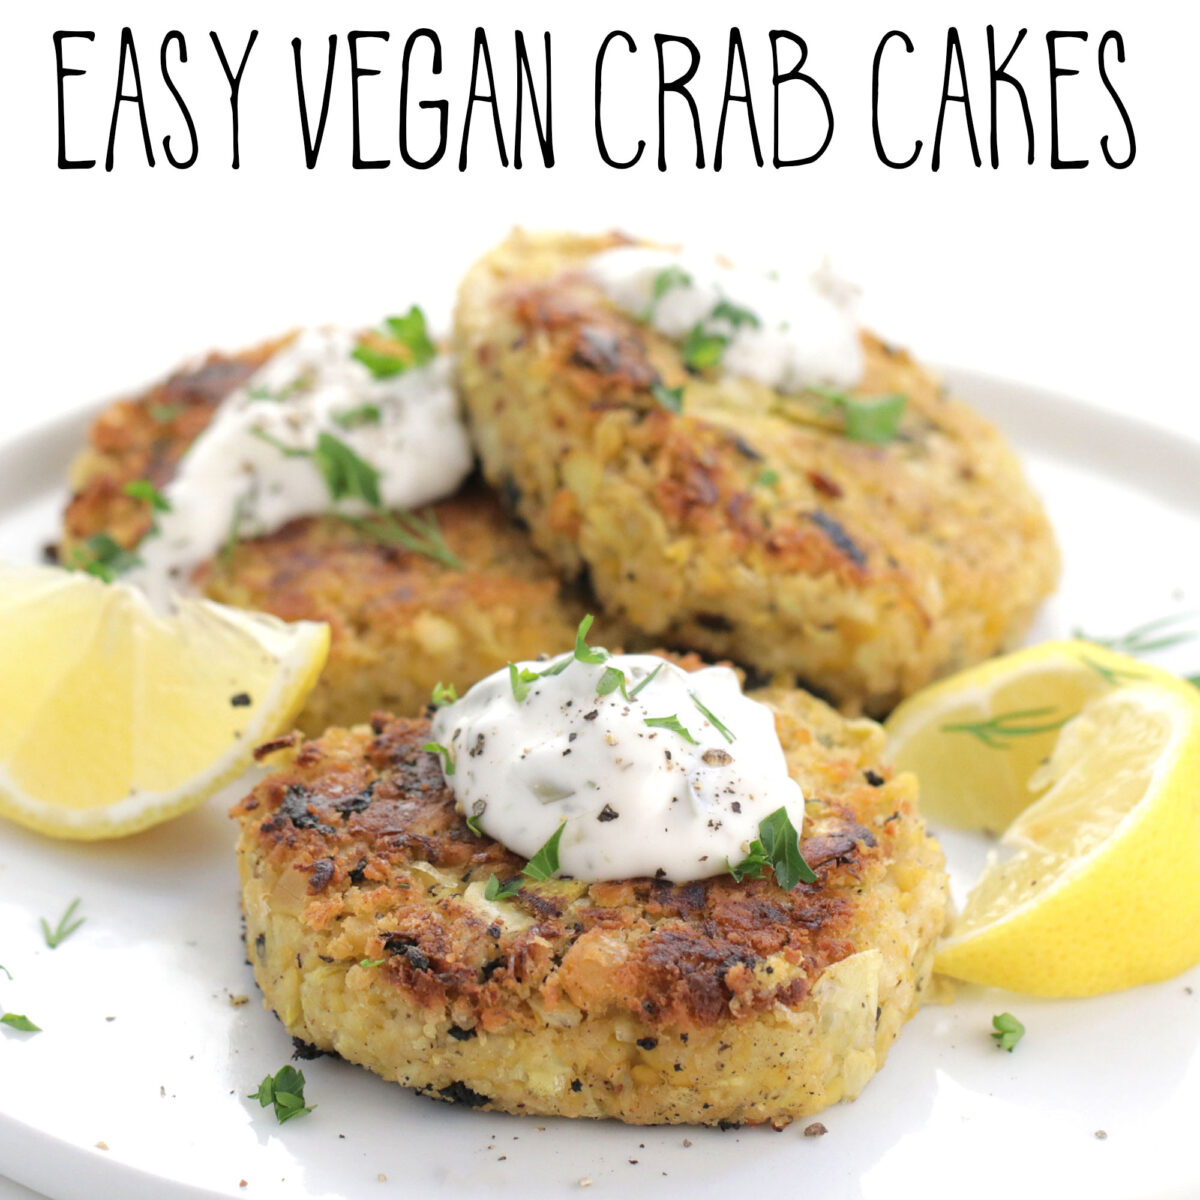 Easy Vegan Crab Cakes